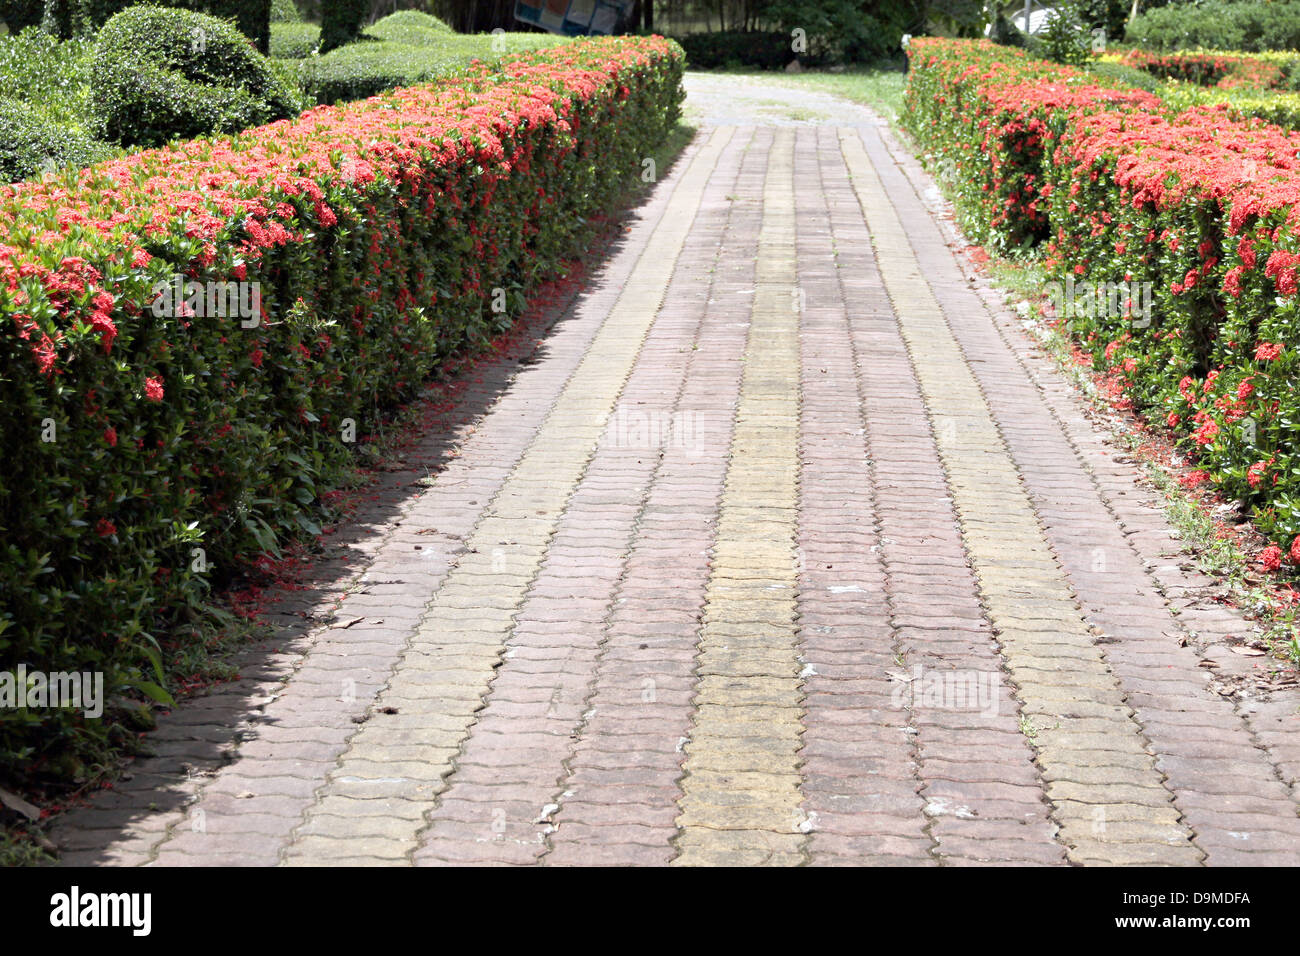 El camino pavimentado con ladrillos en el jardín. Foto de stock